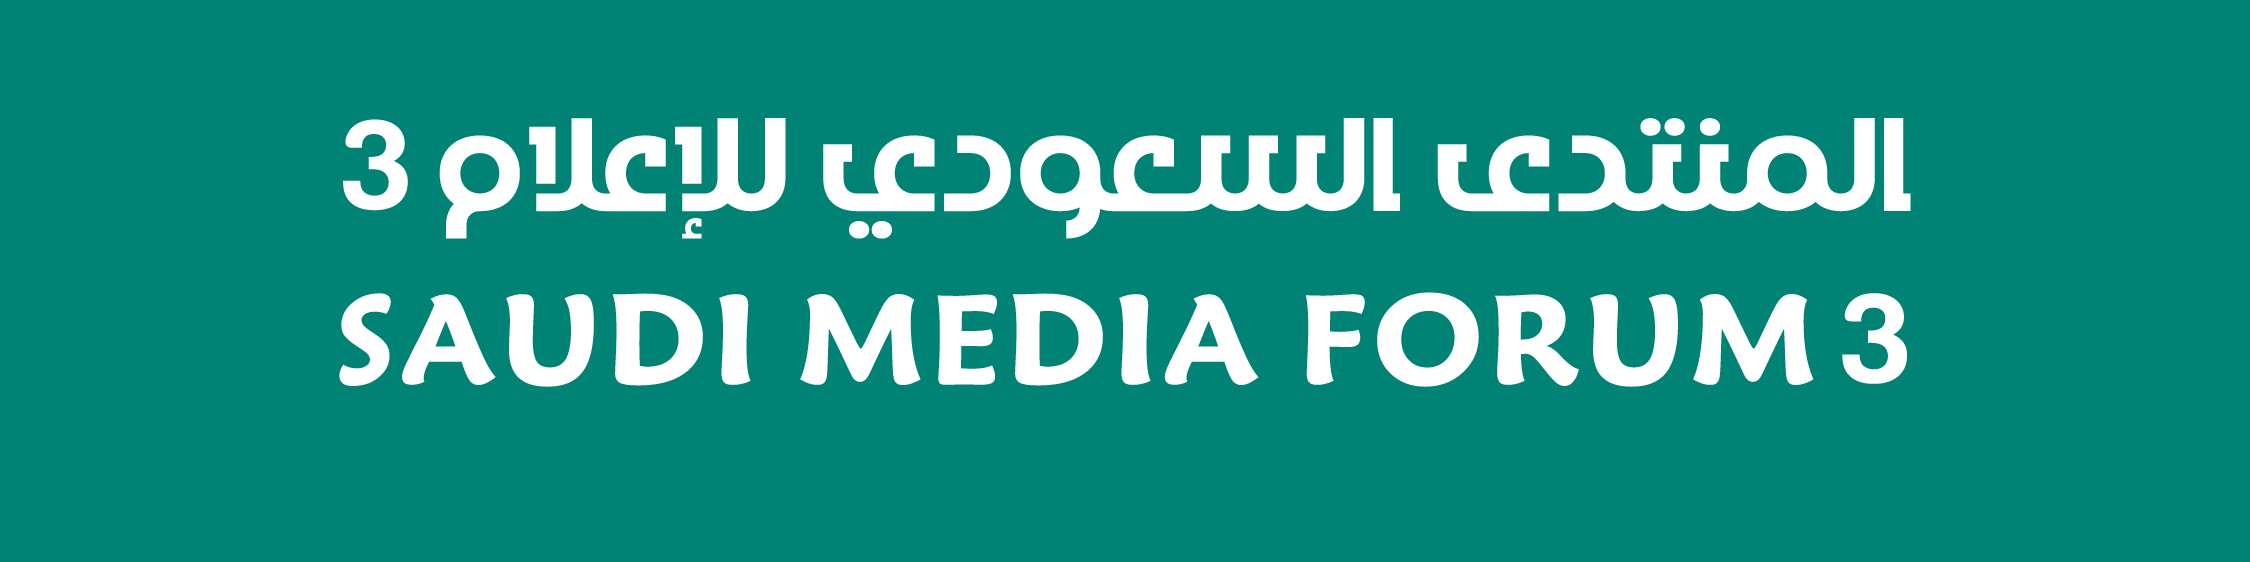 يجتمع فيها وزراء ومسؤولون وأكاديميون وإعلاميون 60 جلسة وورشة تناقش أبرز قضايا الإعلام في المنتدى السعودي للإعلام